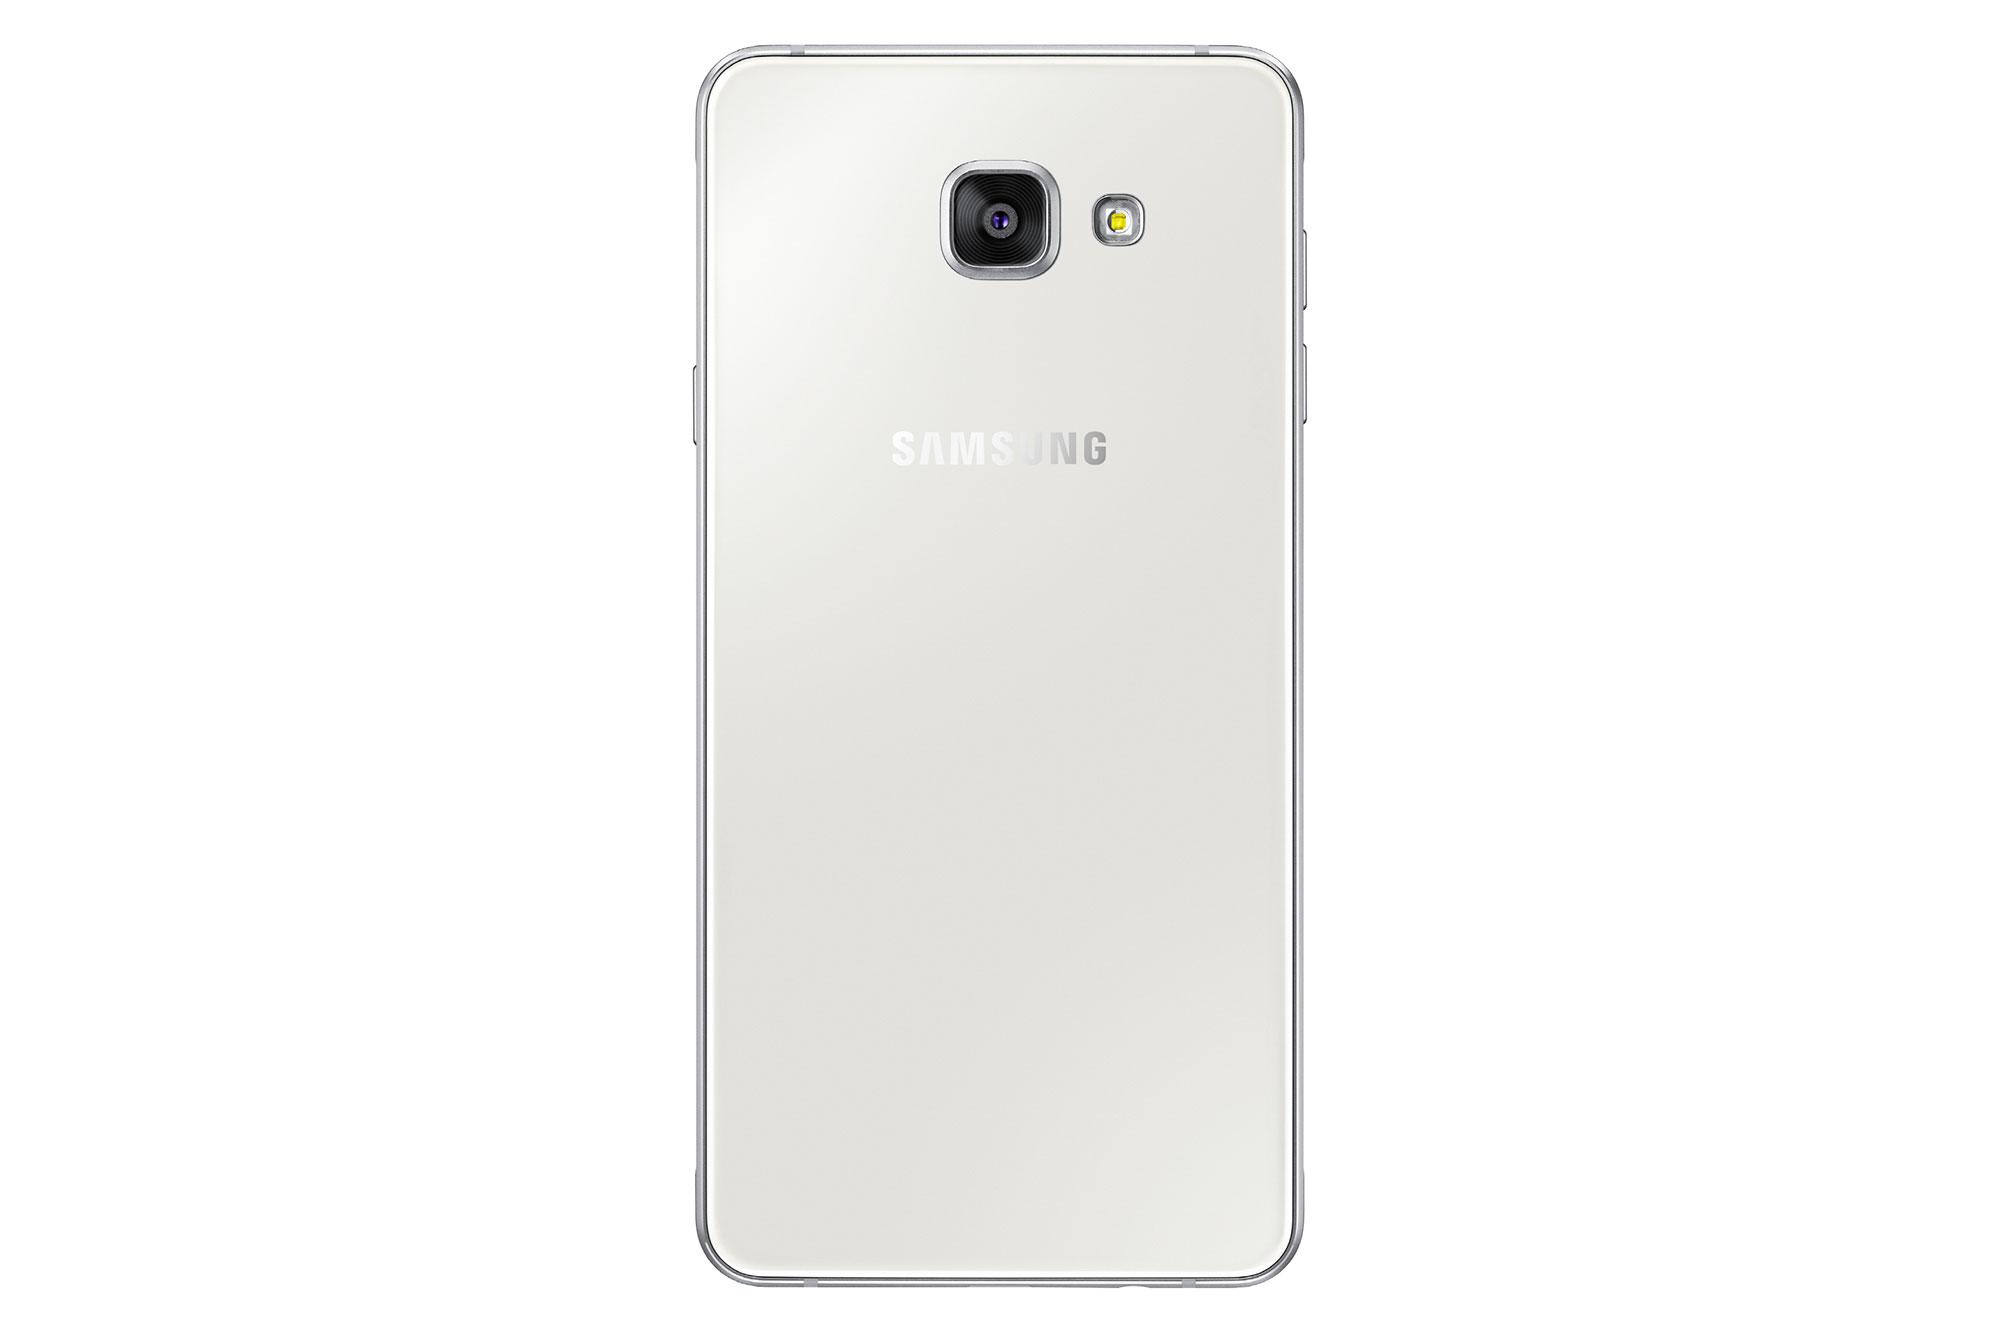 Samsung Galaxy A7 2016 blanco detalle de cámara